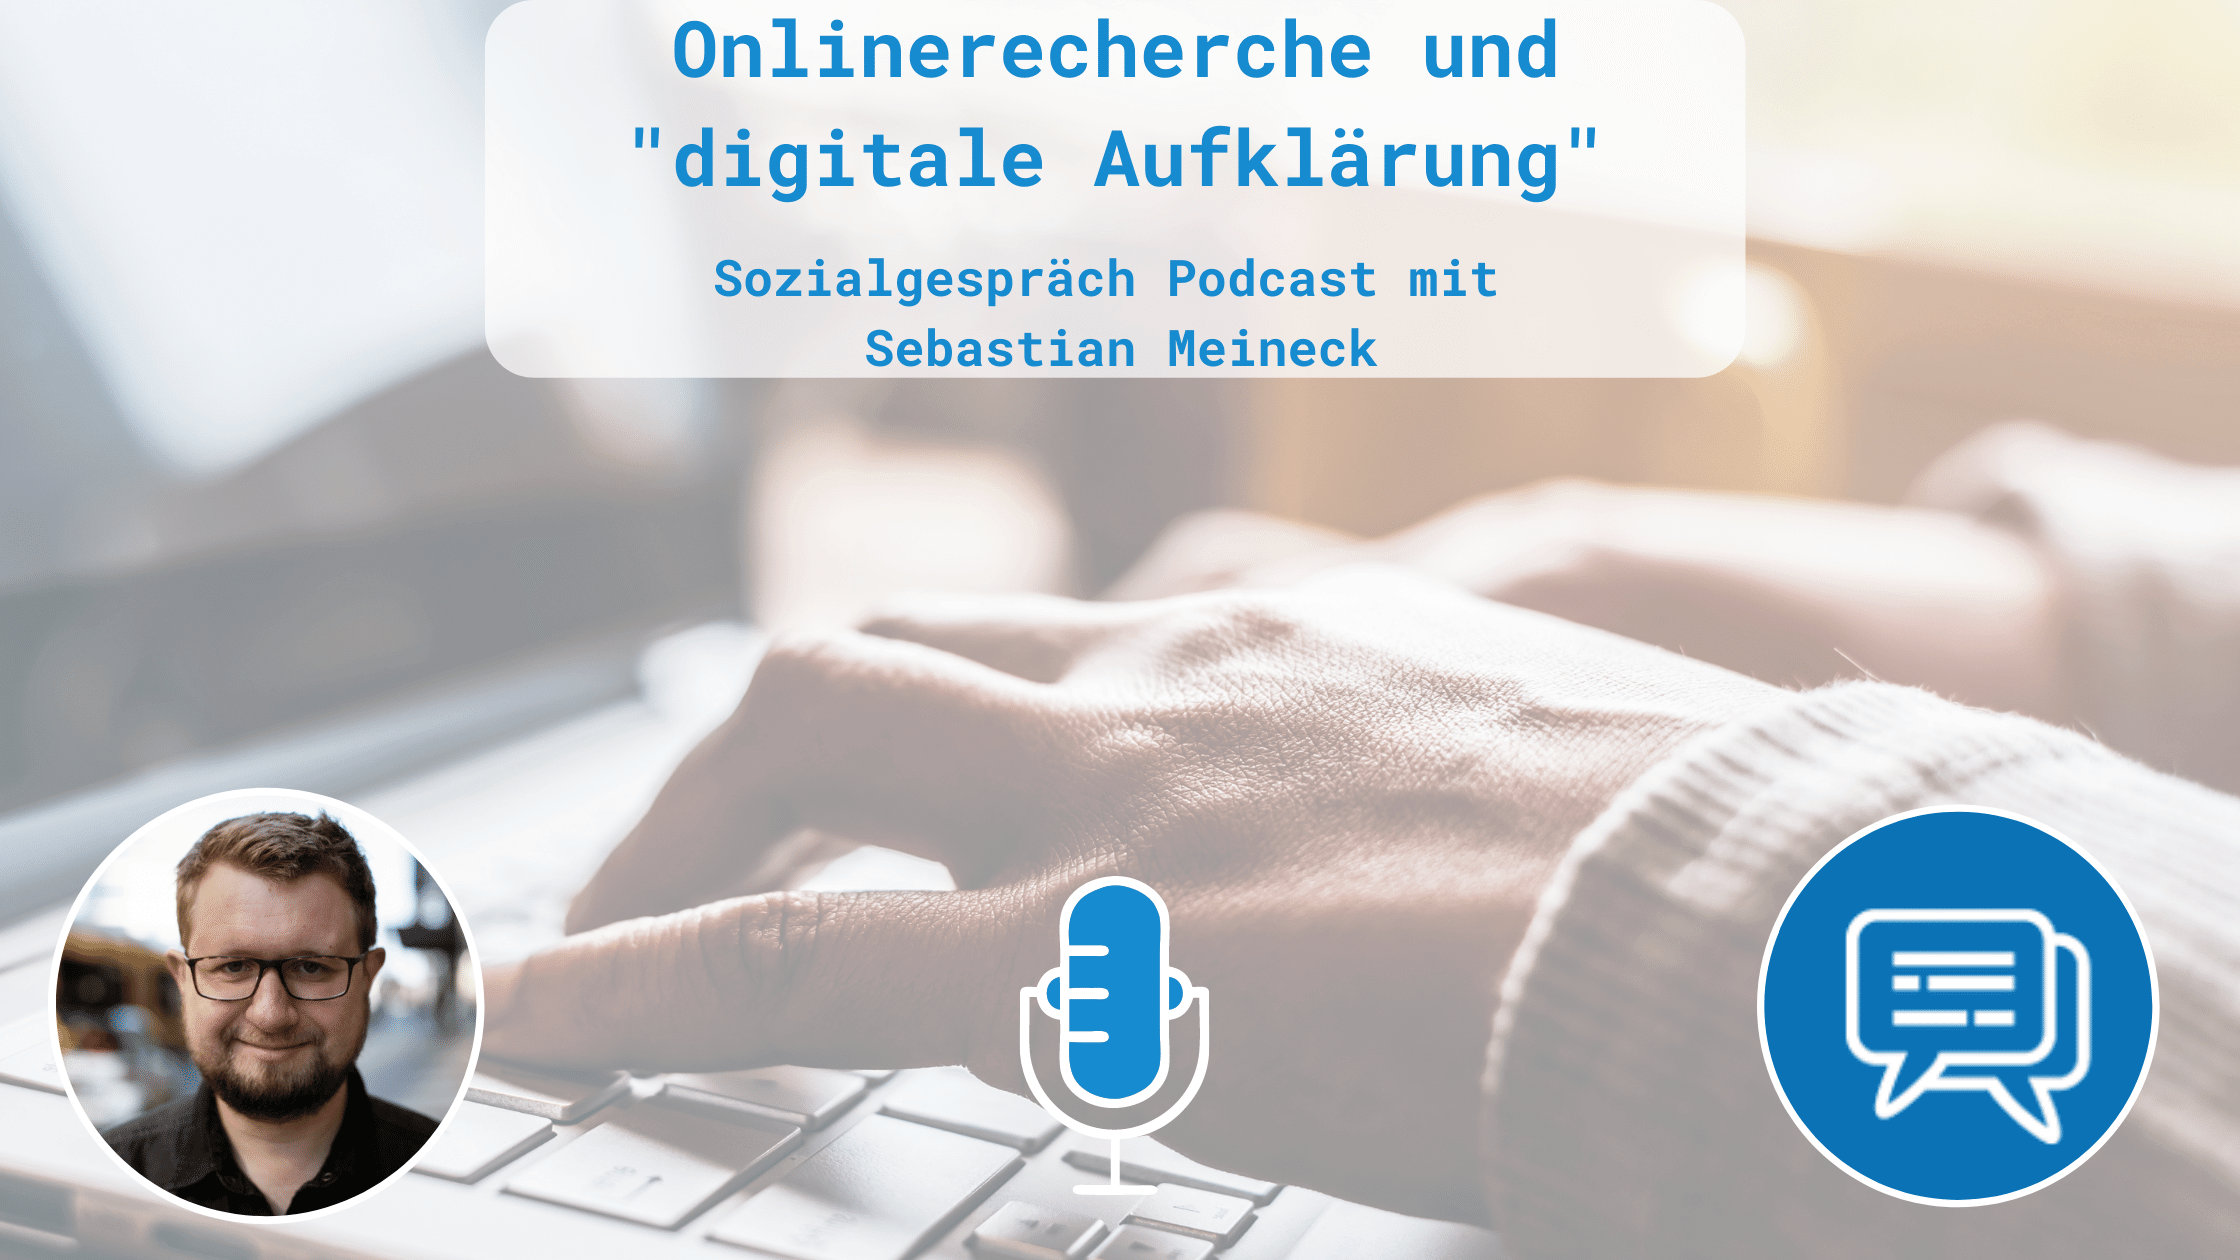 Im Hintergrund Hände die auf einem Laptop tippen, im Vordergrund ein Portrait von Sebastian Meincke, ein Mikrofon Symbol, das sozial-pr Logo und der Titel der Podcastfolge und des Blogartikels